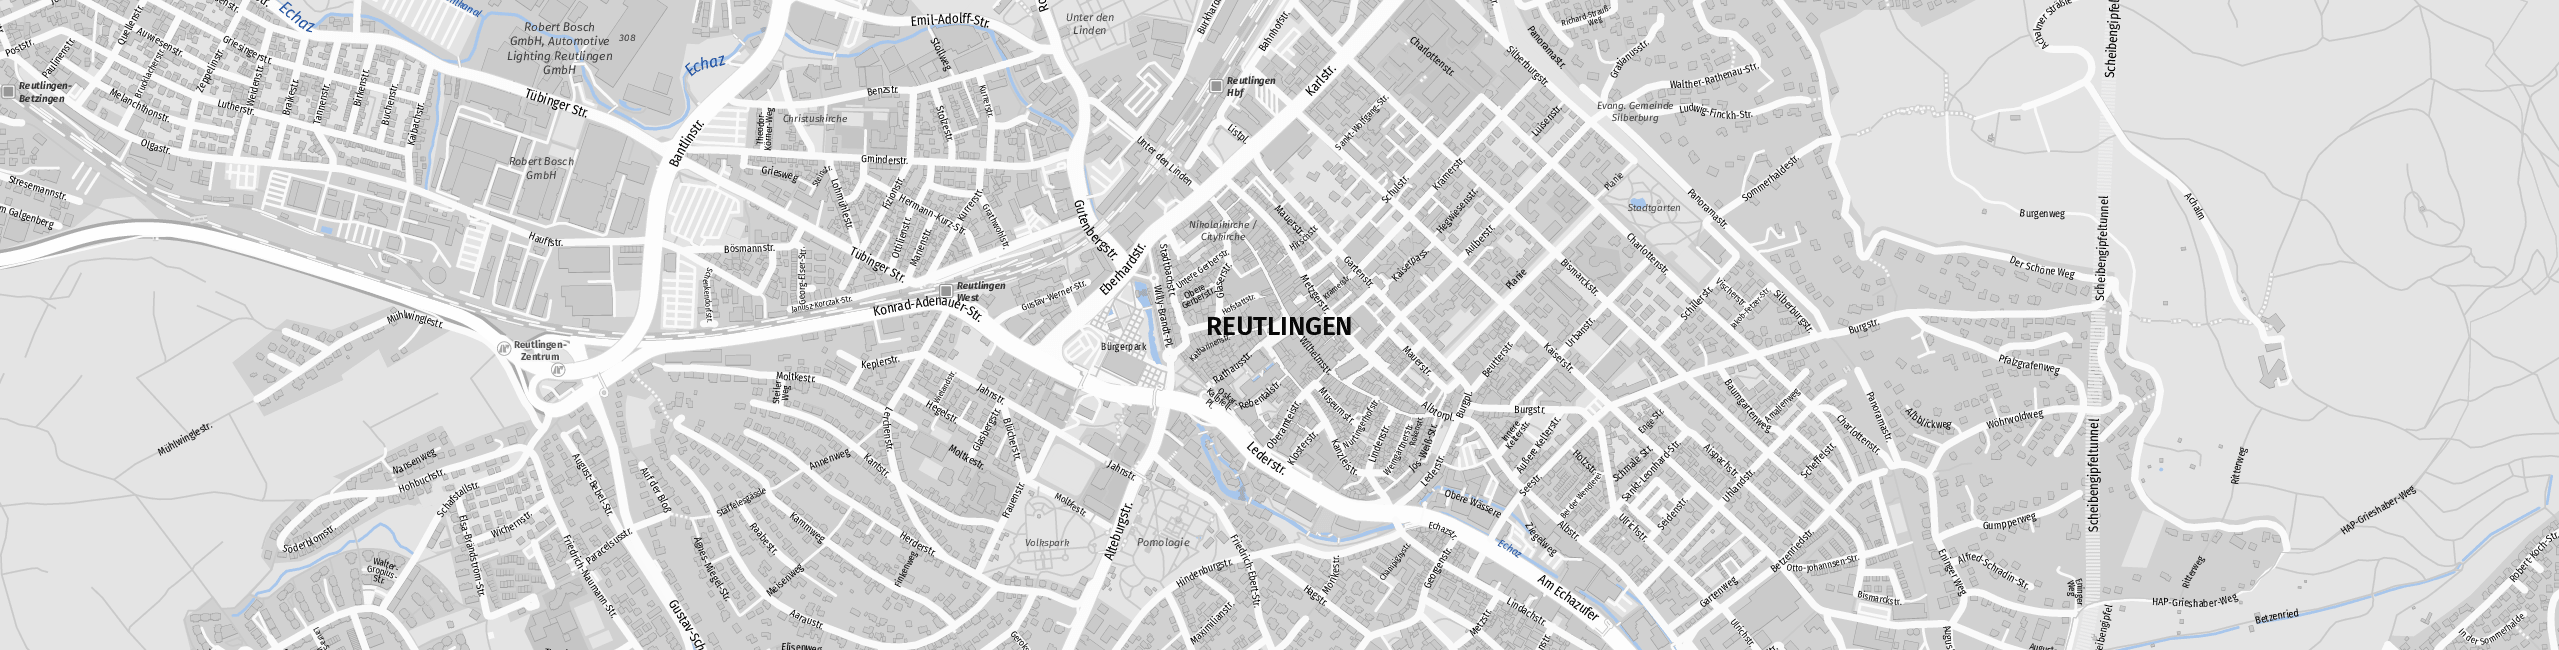 Stadtplan Reutlingen zum Downloaden.